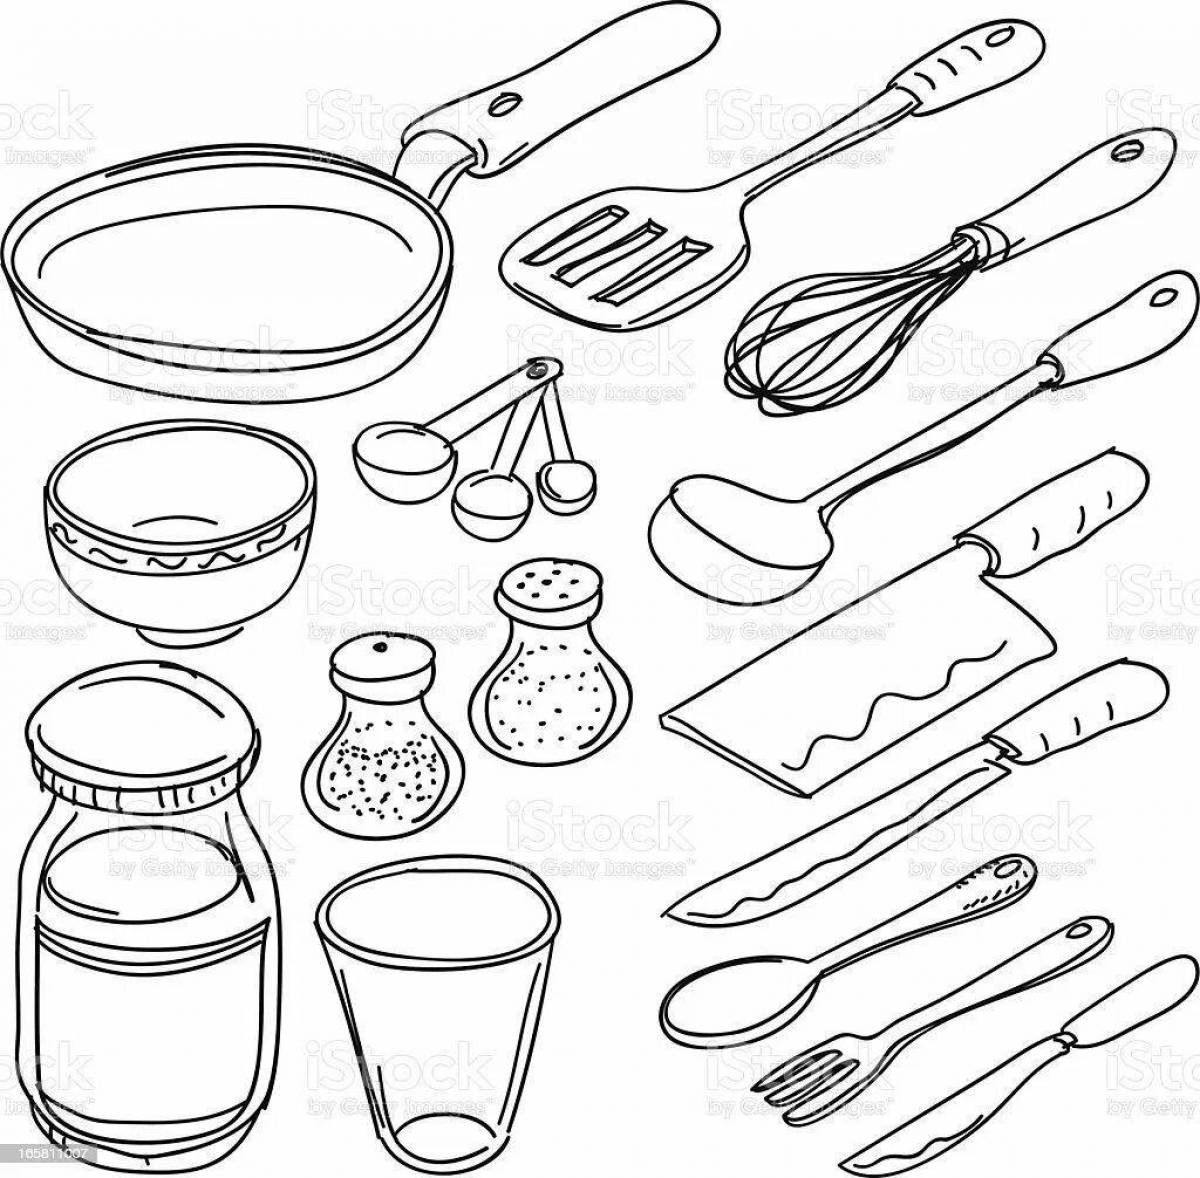 Выдающаяся страница раскраски кухонной утвари для детей